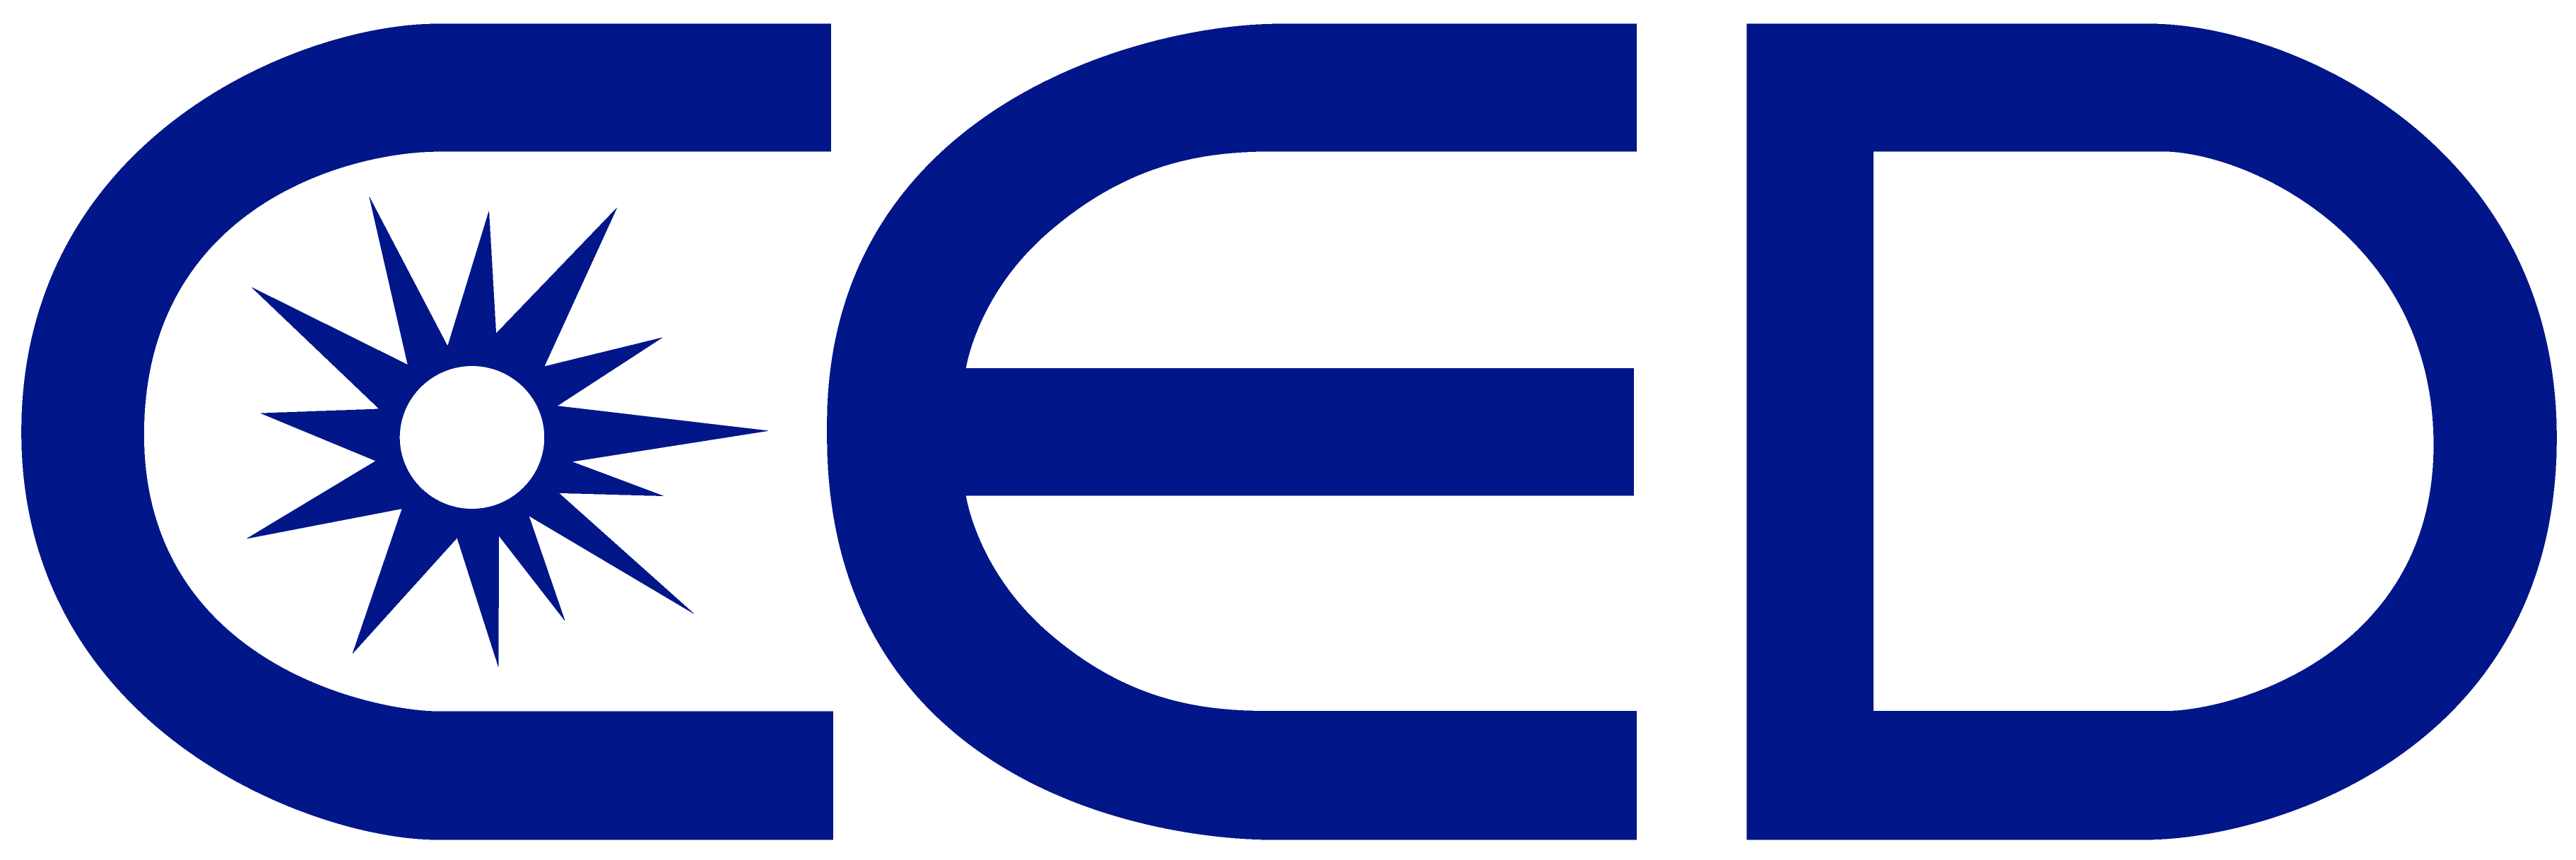 CED a schey sales recruiting partner logo